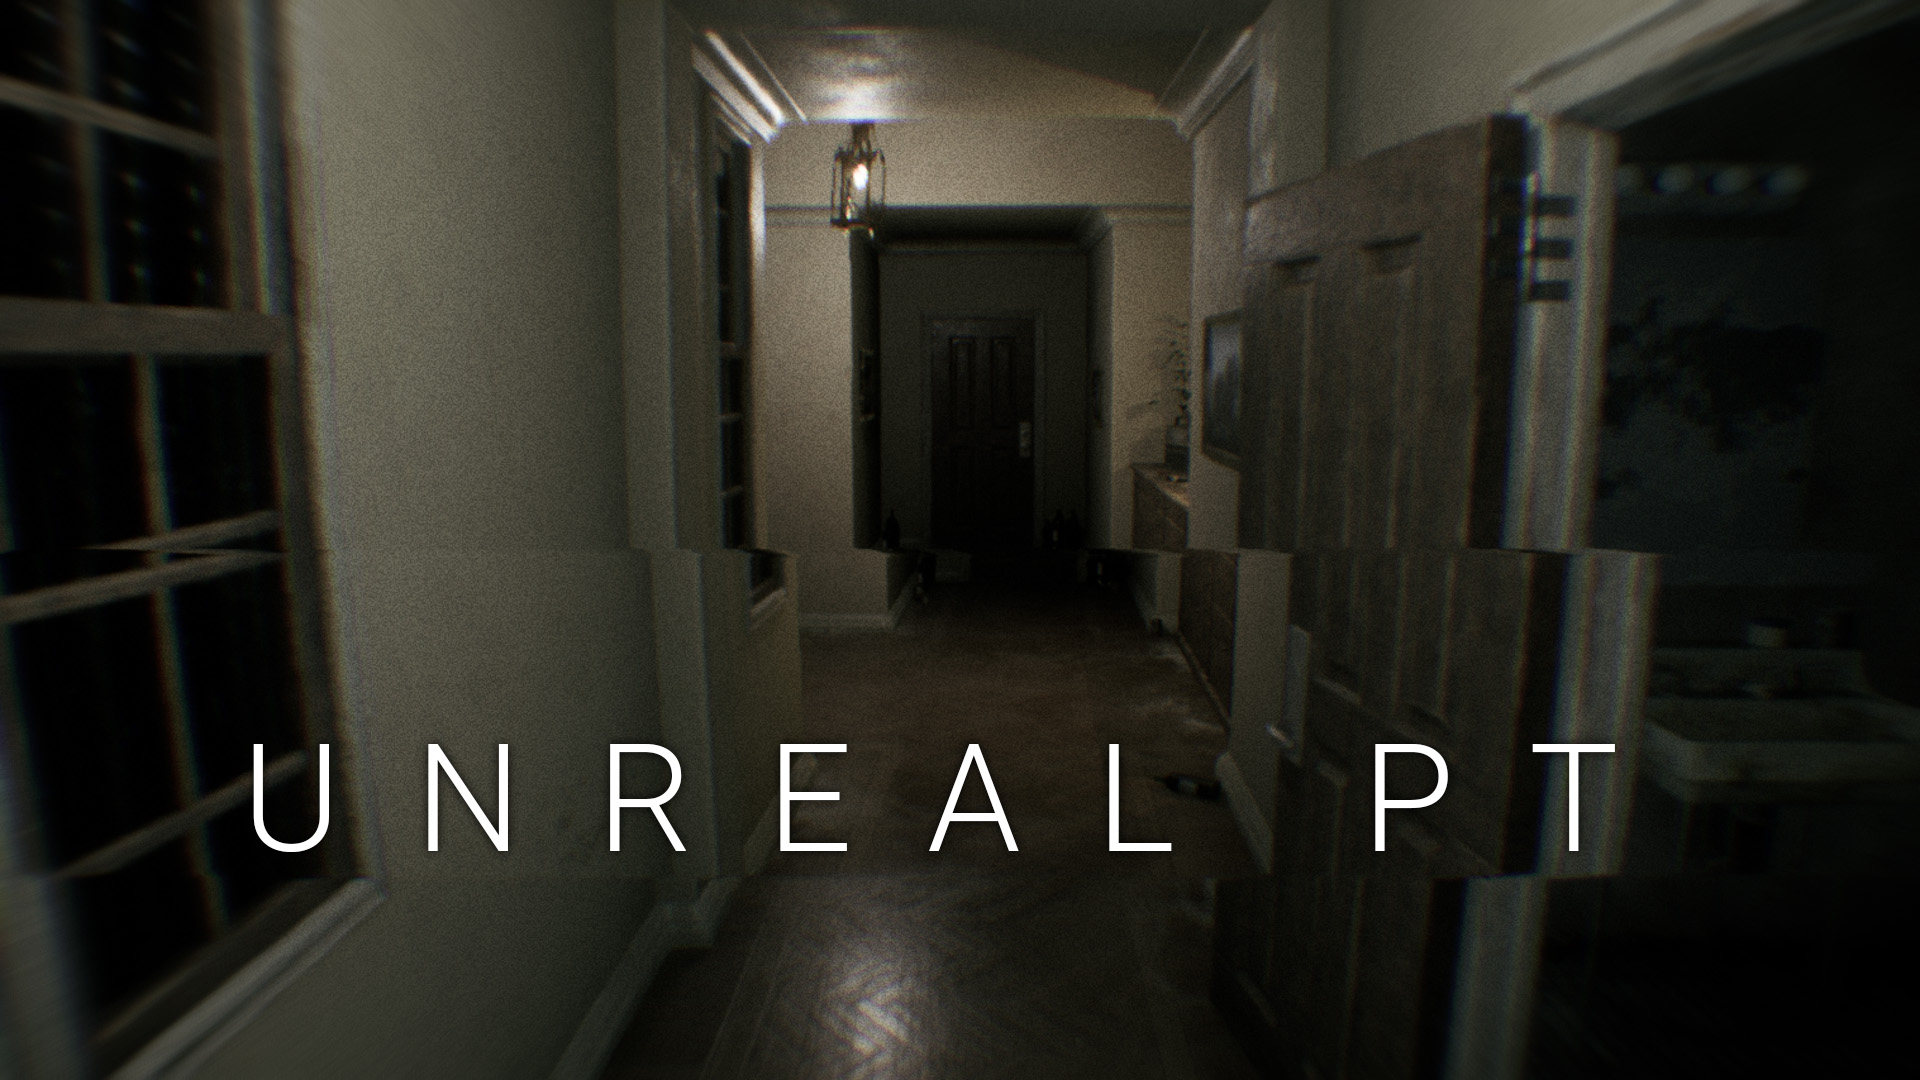 เปิดตัวเกม Silent Hill เวอร์ชั่นแฟนคลับทำเองในชื่อ Unreal PT โหลดฟรีได้แล้ววันนี้ เฉพาะเครื่อง PC เท่านั้น!